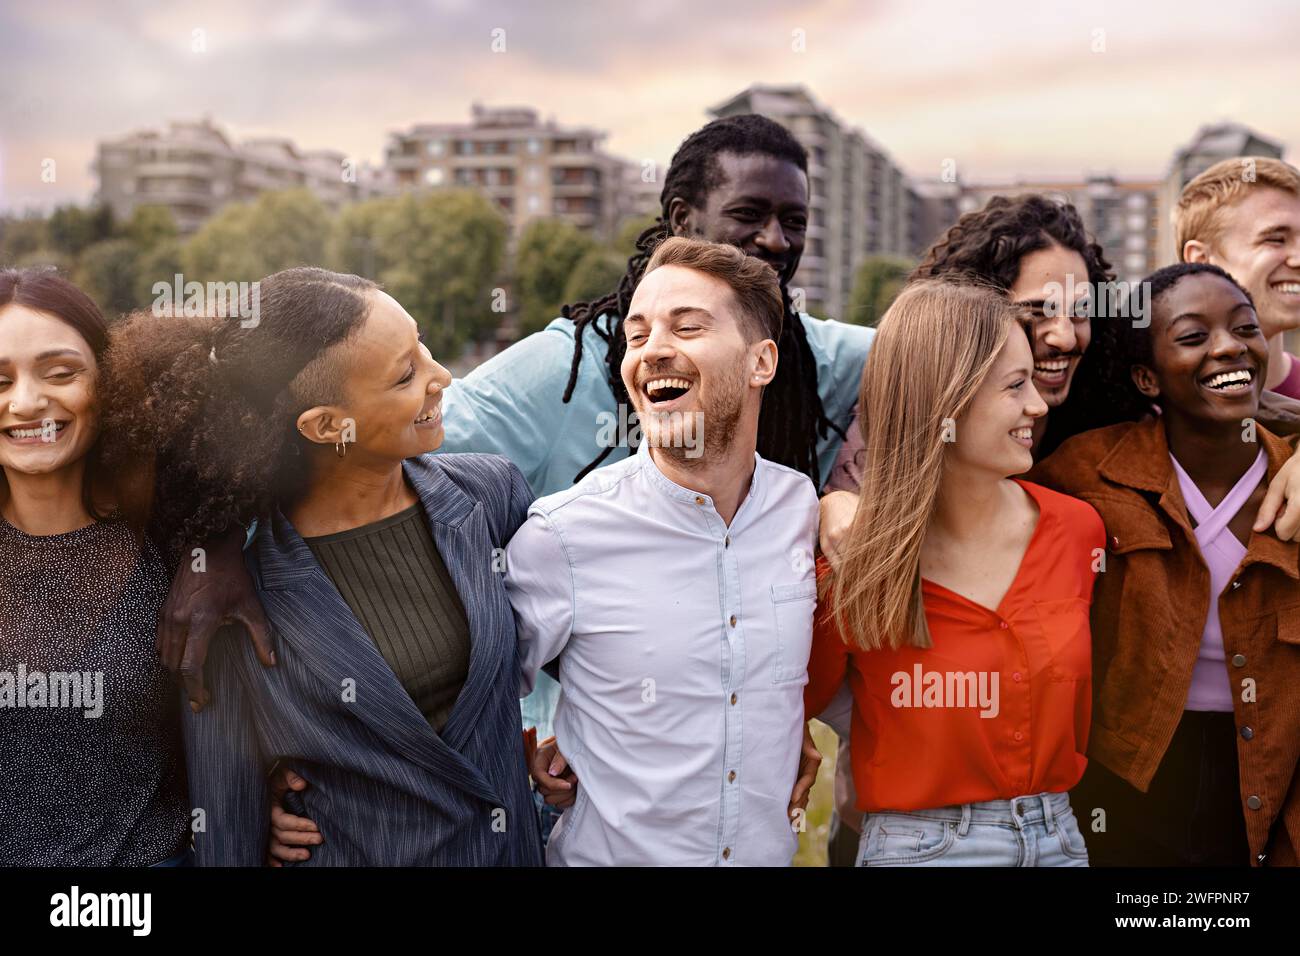 Eine überschwängliche Gruppe junger Erwachsener aus verschiedenen ethnischen Hintergründen, die einen Moment des echten Lachens und Genusses vor einer urbanen Kulisse teilen - Beau Stockfoto